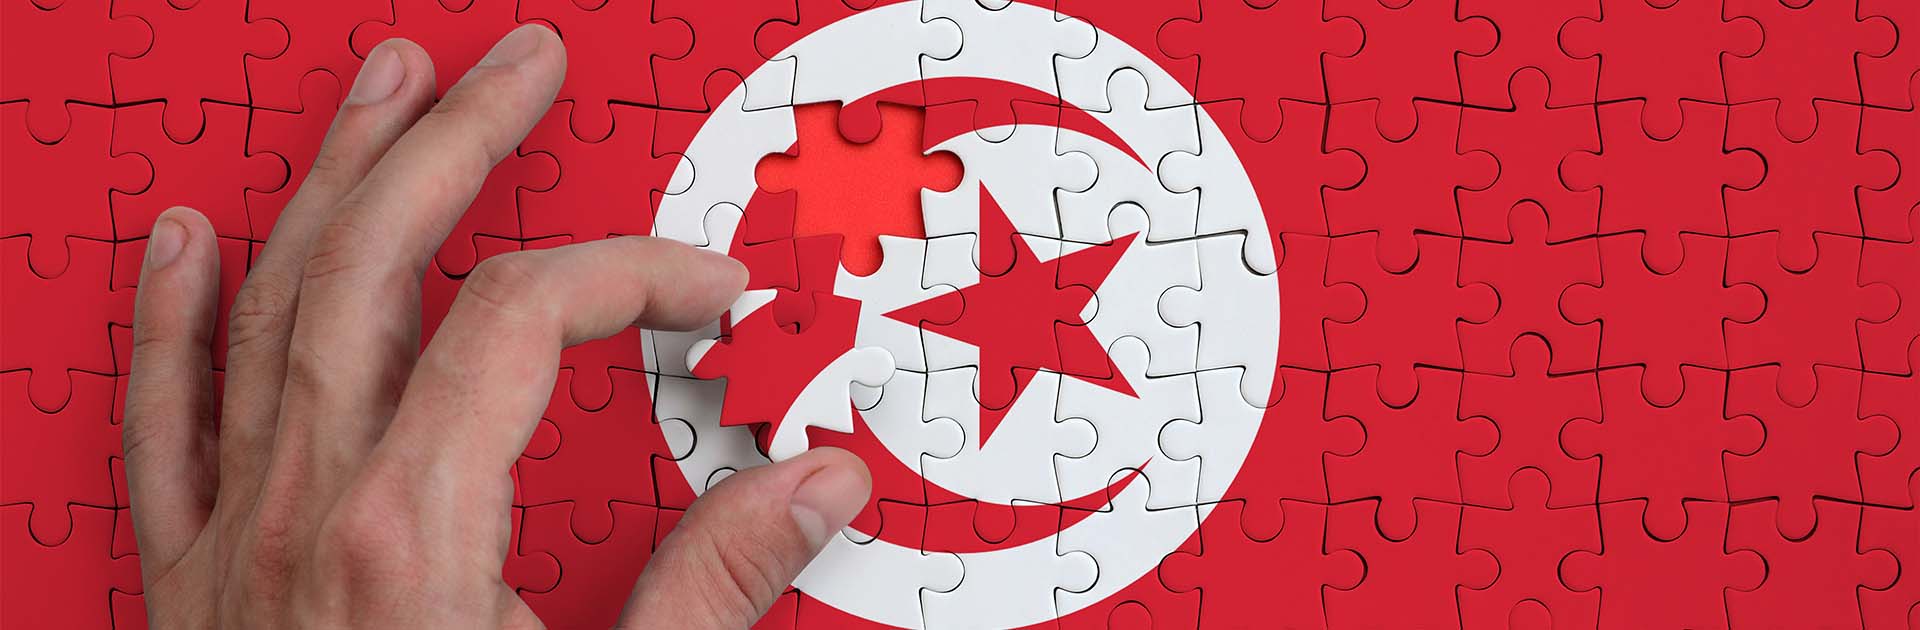 20220808 Túnez el desmantelamiento de una democracia